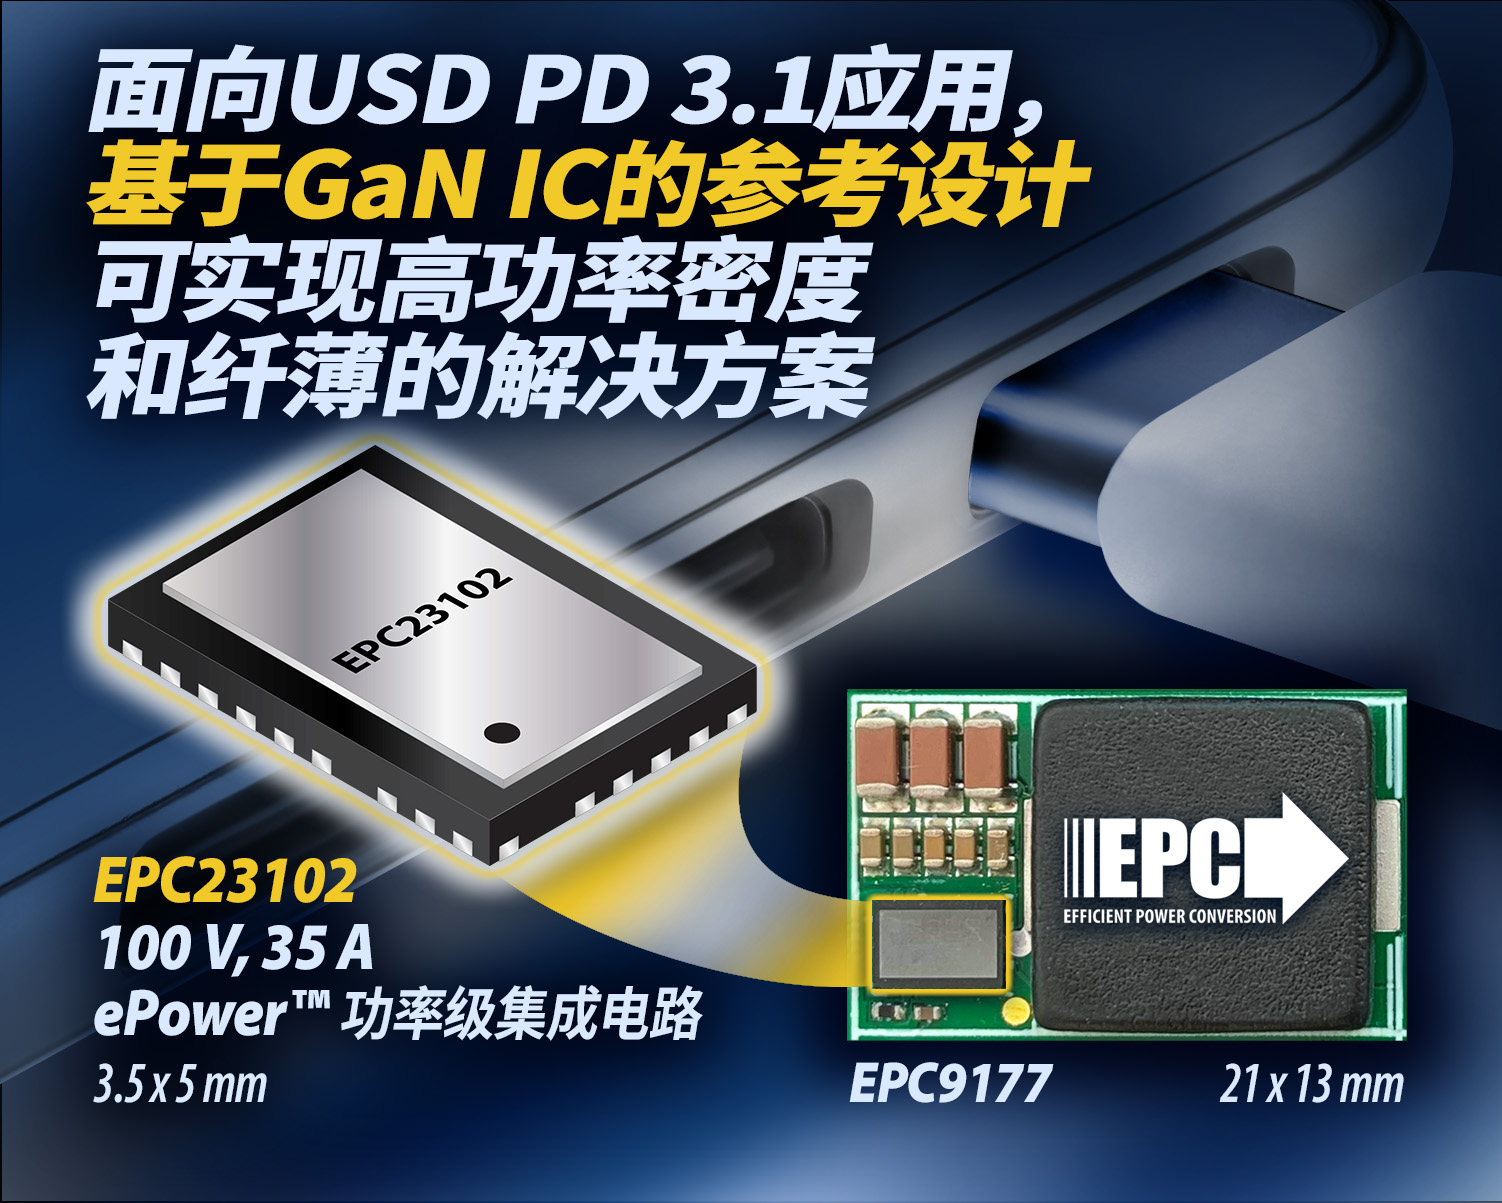 面向USB PD 3.1應用,EPC新推基于eGaN IC的高功率密度、薄型DC/DC轉換器參考設計